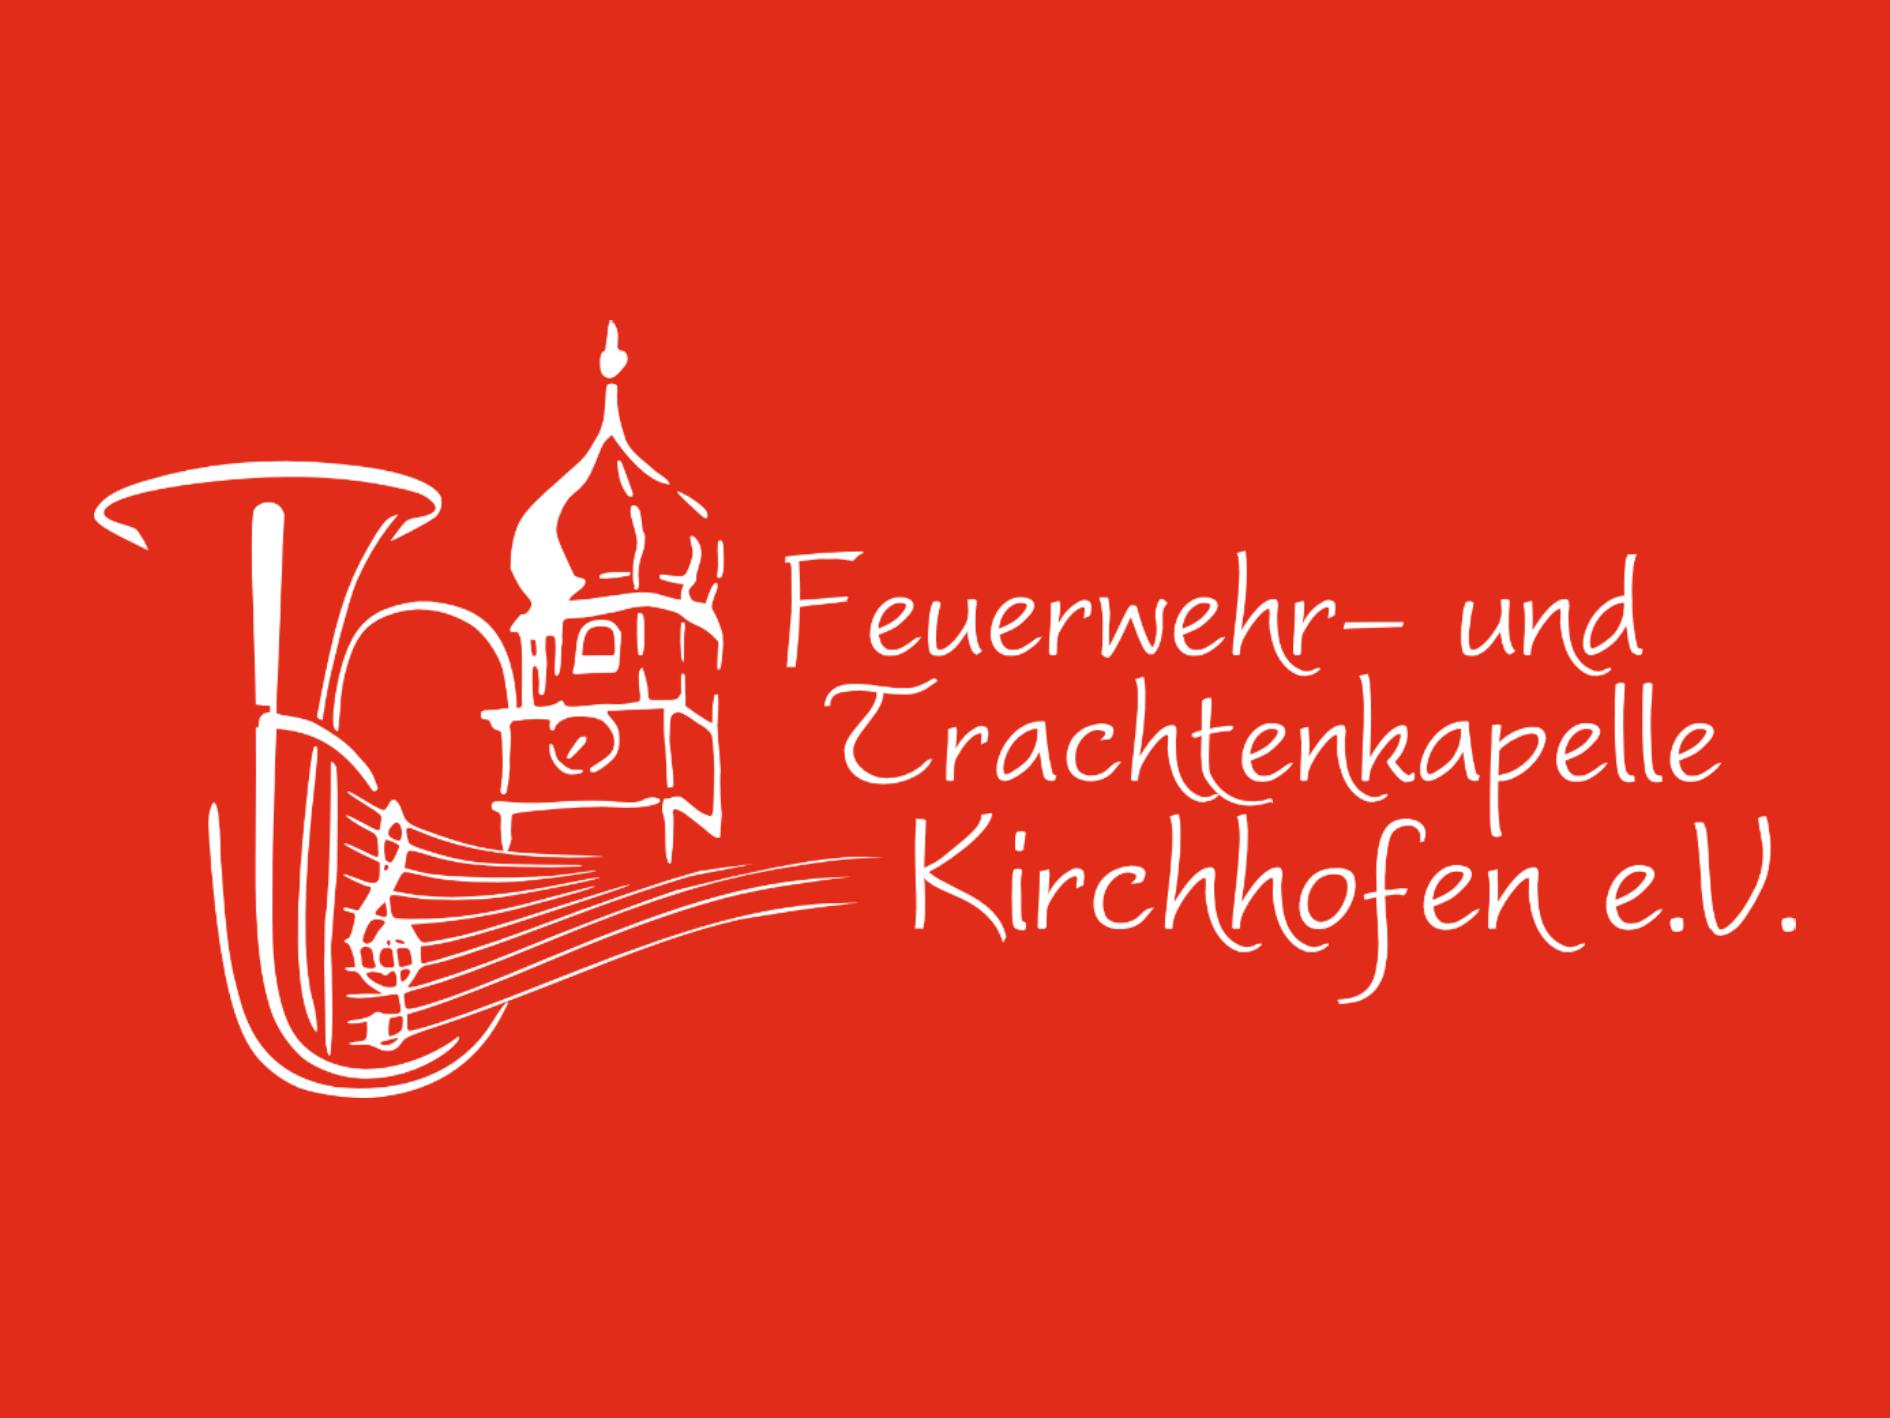 Feuerwehr- und Trachtenkapelle Kirchhofen